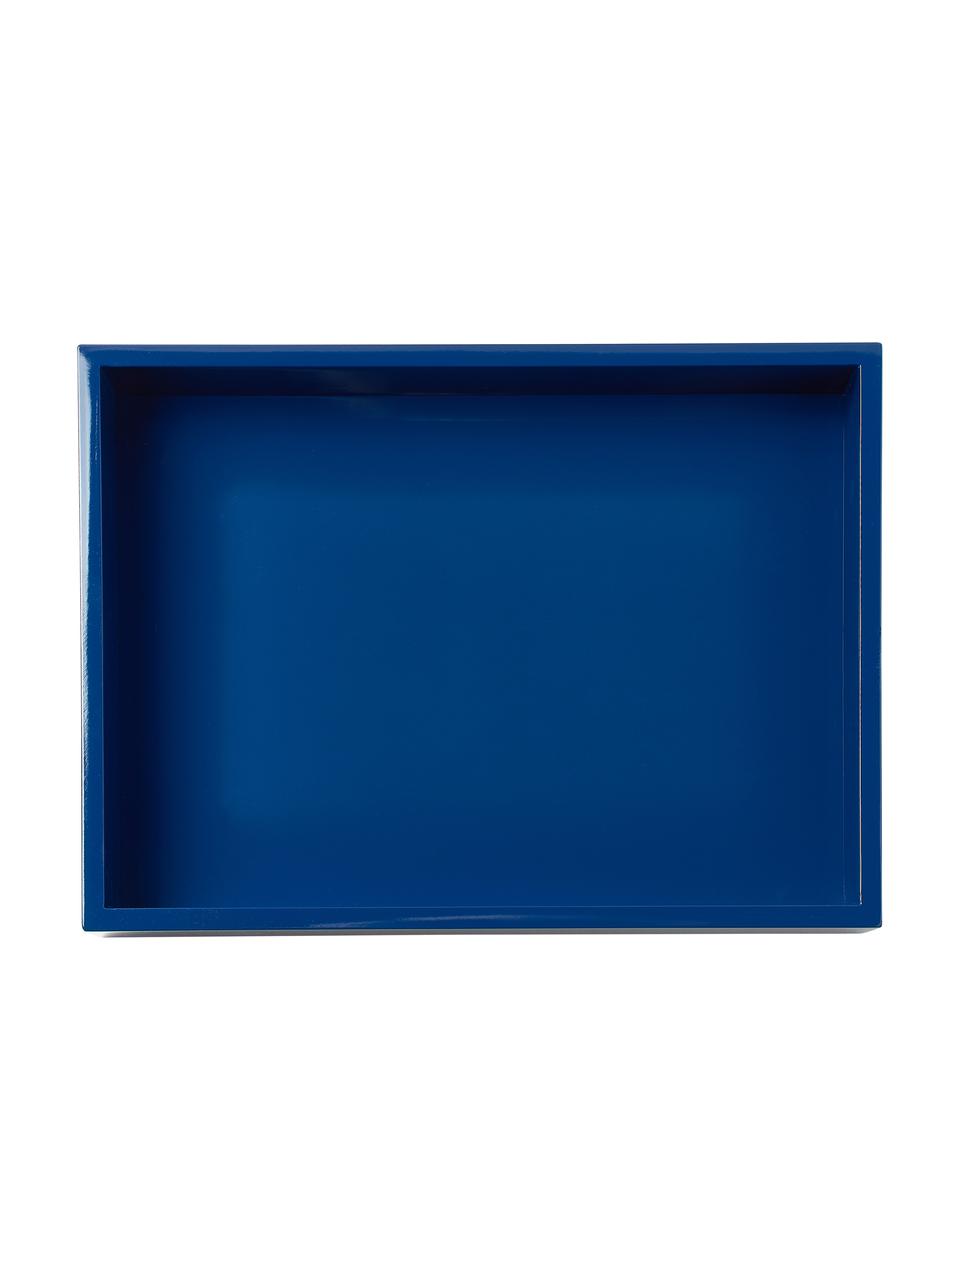 Hochglanz-Tablett Hayley, Mitteldichte Holzfaserplatte (MDF), lackiert, Blau, B 24 x L 33 cm